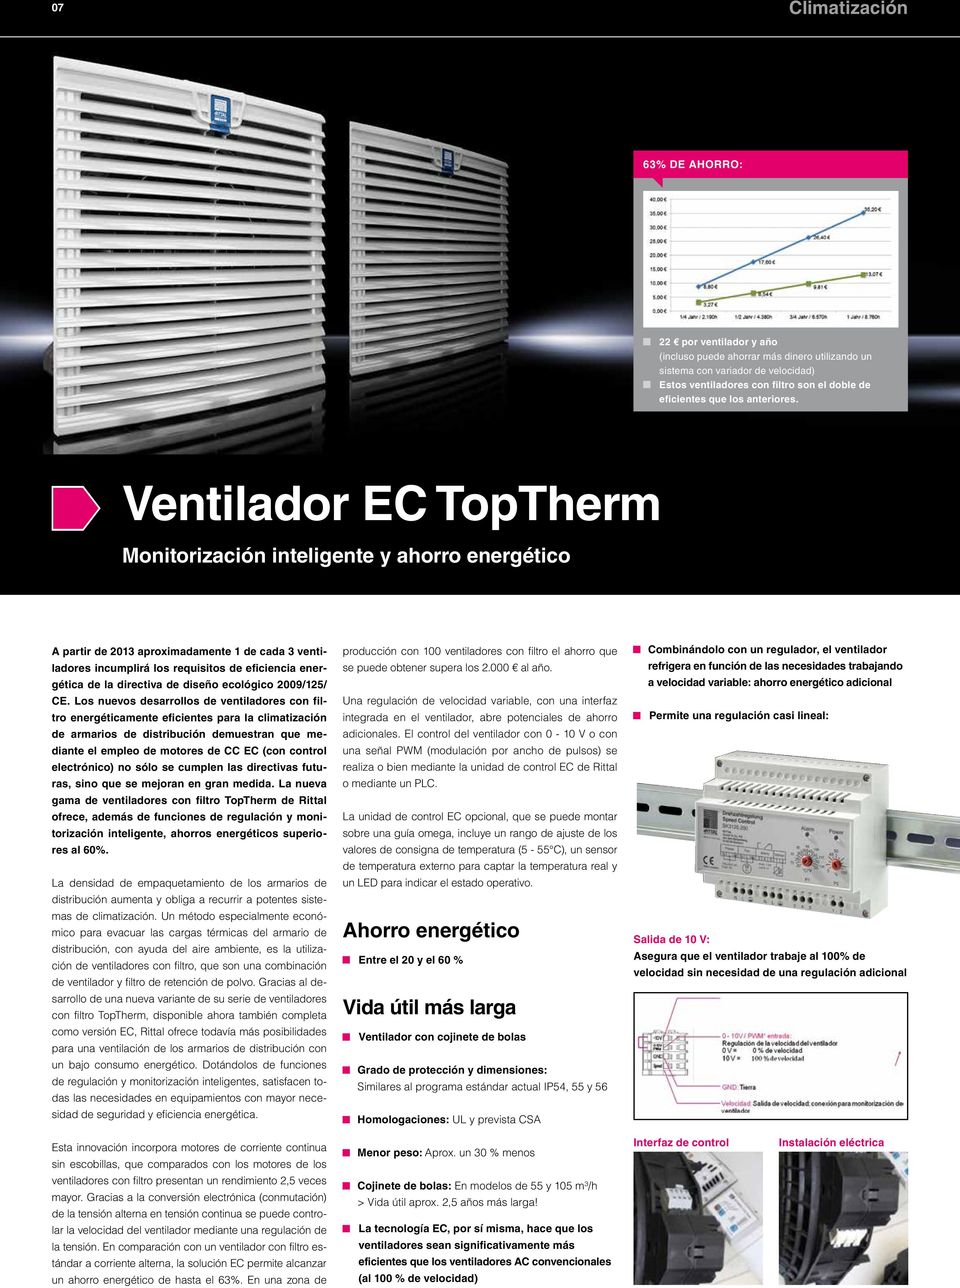 Ventilador EC TopTherm Monitorización inteligente y ahorro energético A partir de 2013 aproximadamente 1 de cada 3 ventiladores incumplirá los requisitos de eficiencia energética de la directiva de